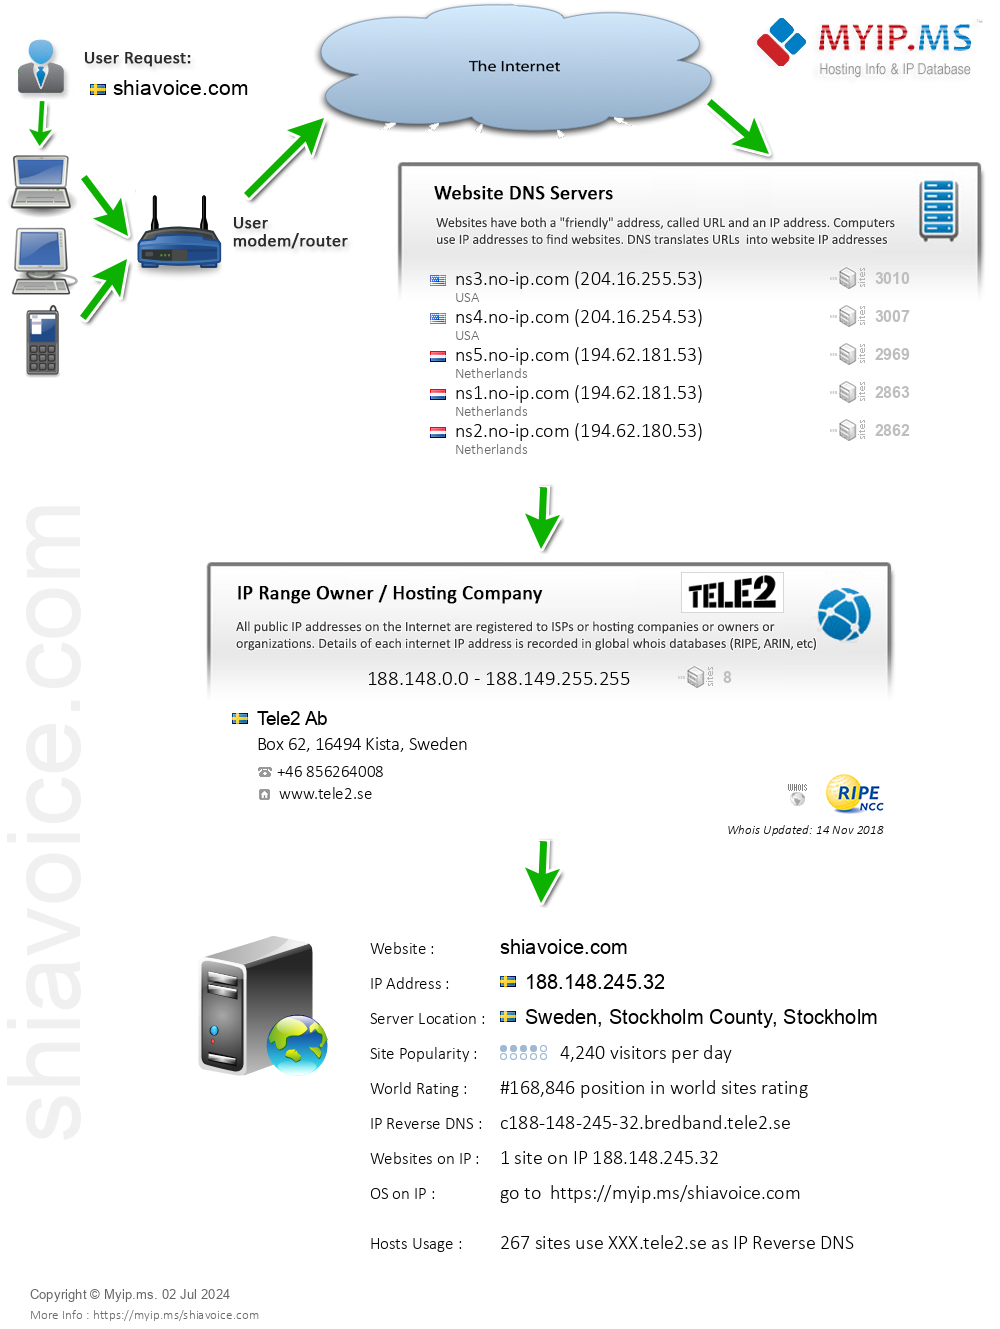 Shiavoice.com - Website Hosting Visual IP Diagram